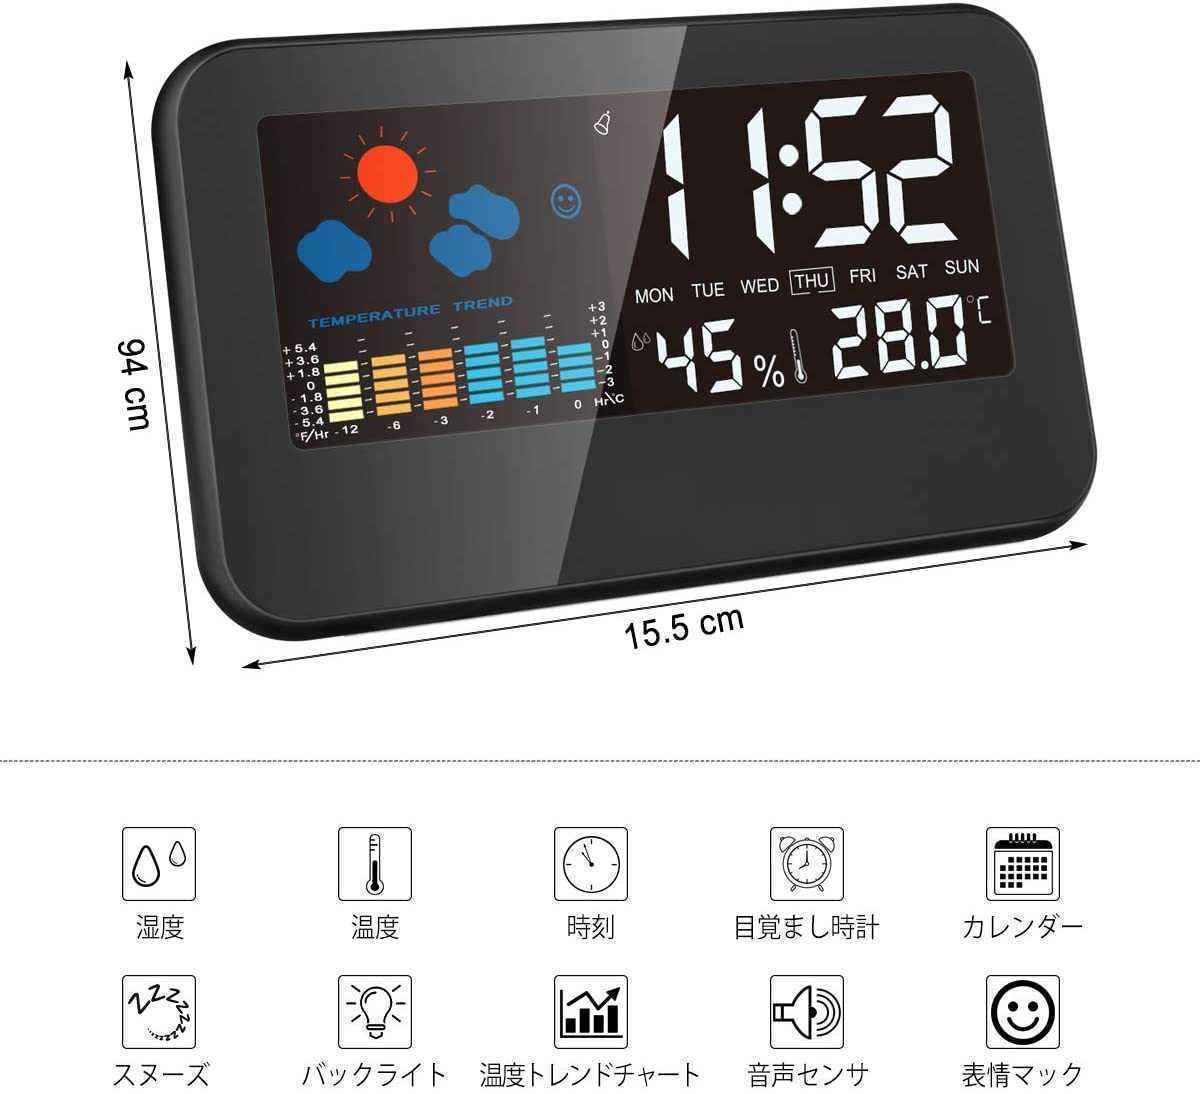 送料無料 デジタル温湿度計 LCD画面 温度計 湿度計 時計 カレンダー 目覚し時計 多機能 日本語説明書付き 乾電池付き E30_画像2